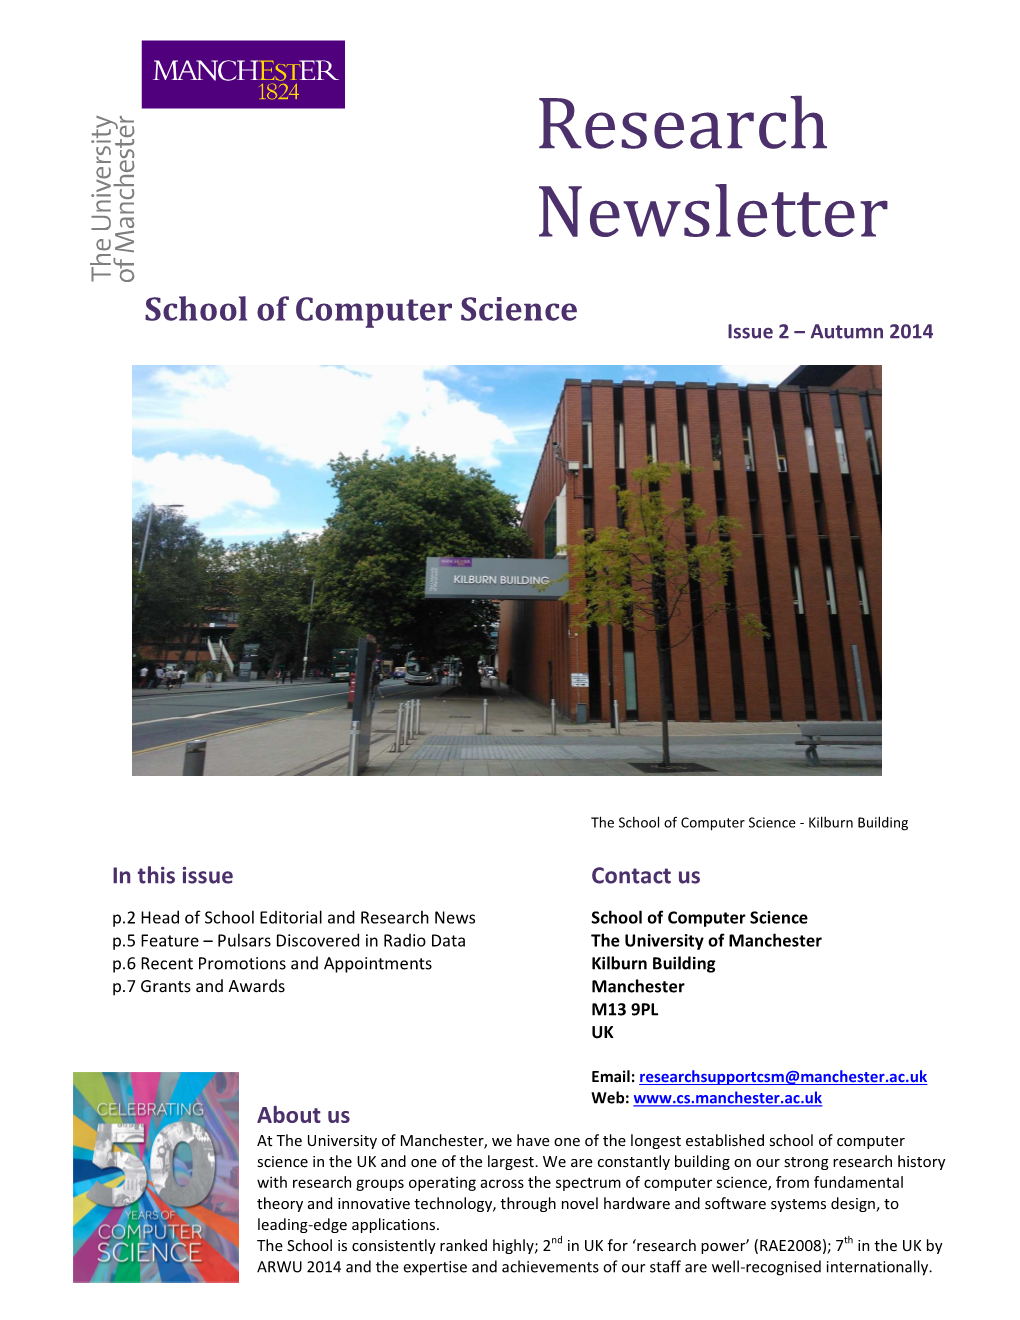 CS Research Newsletter